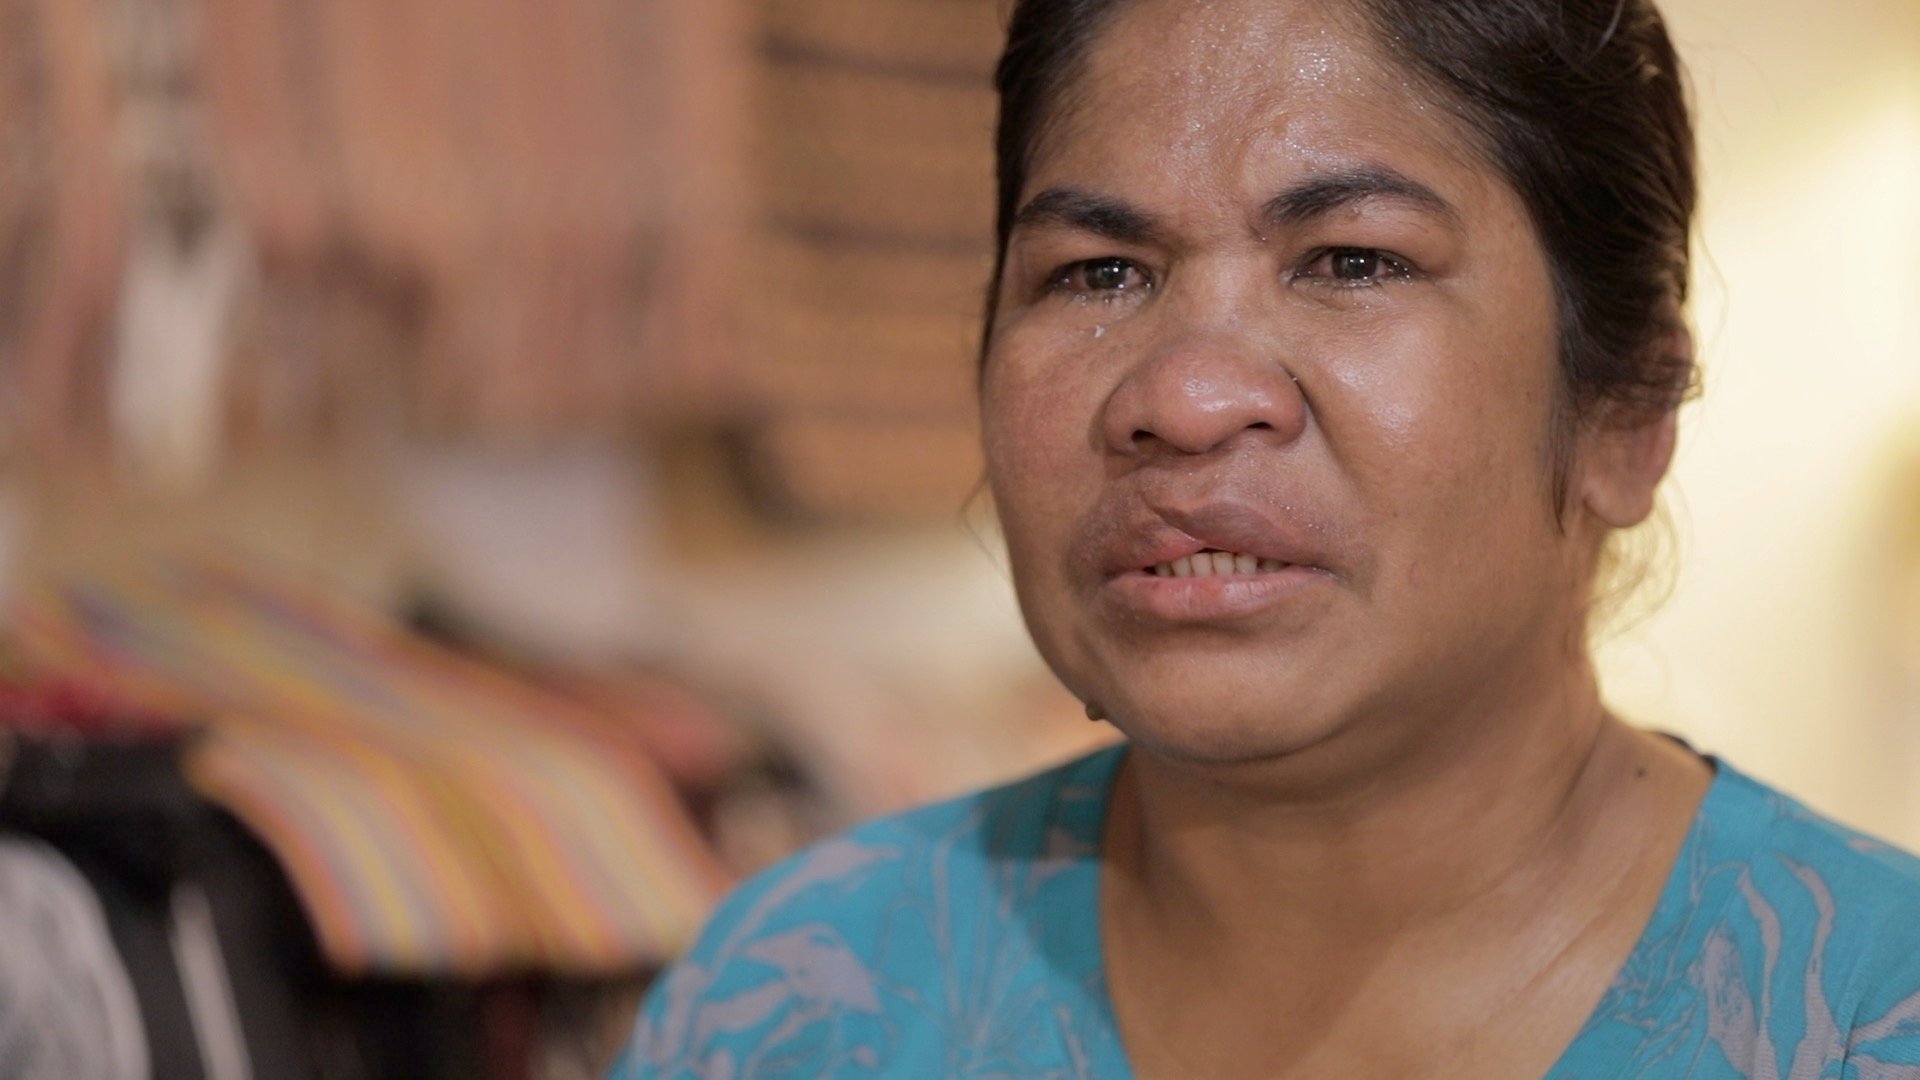 "Ayúdenme, me está torturando": el mensaje de auxilio que ayudó a una empleada doméstica a escapar